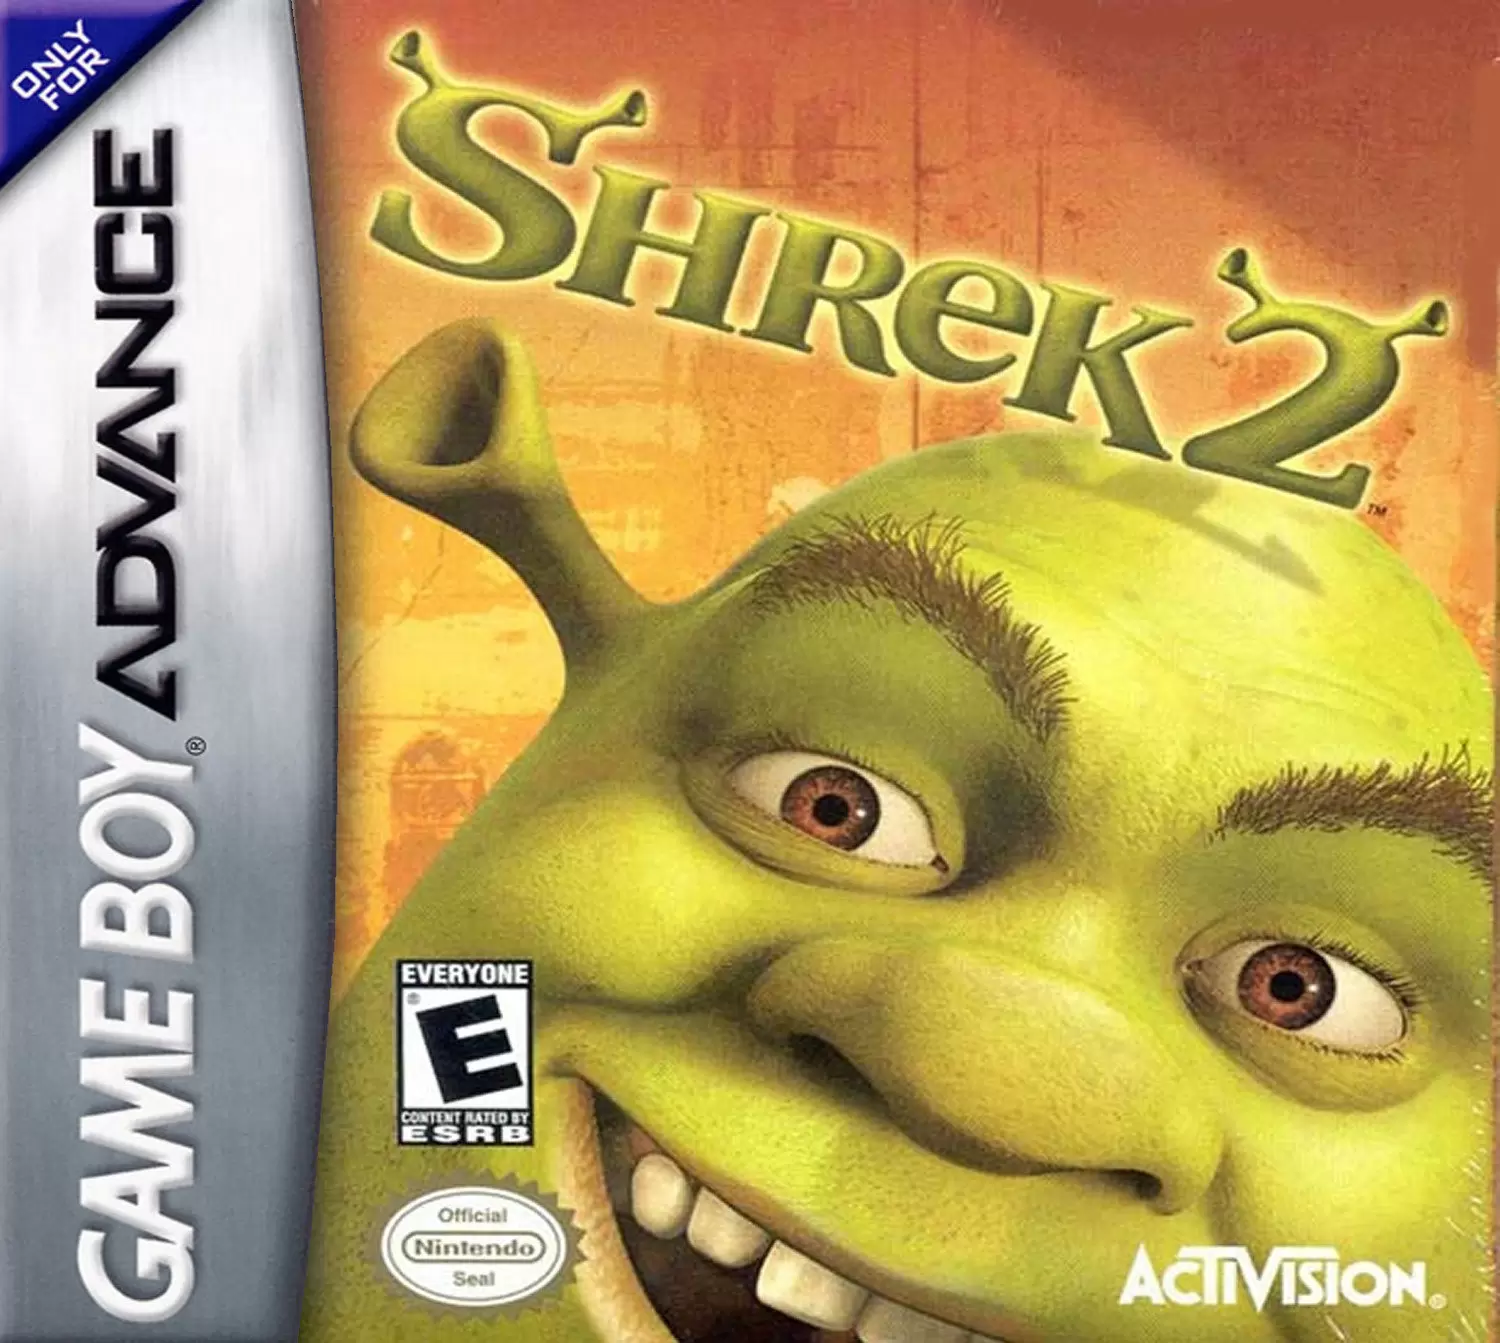 Game Boy Advance Games - Shrek 2